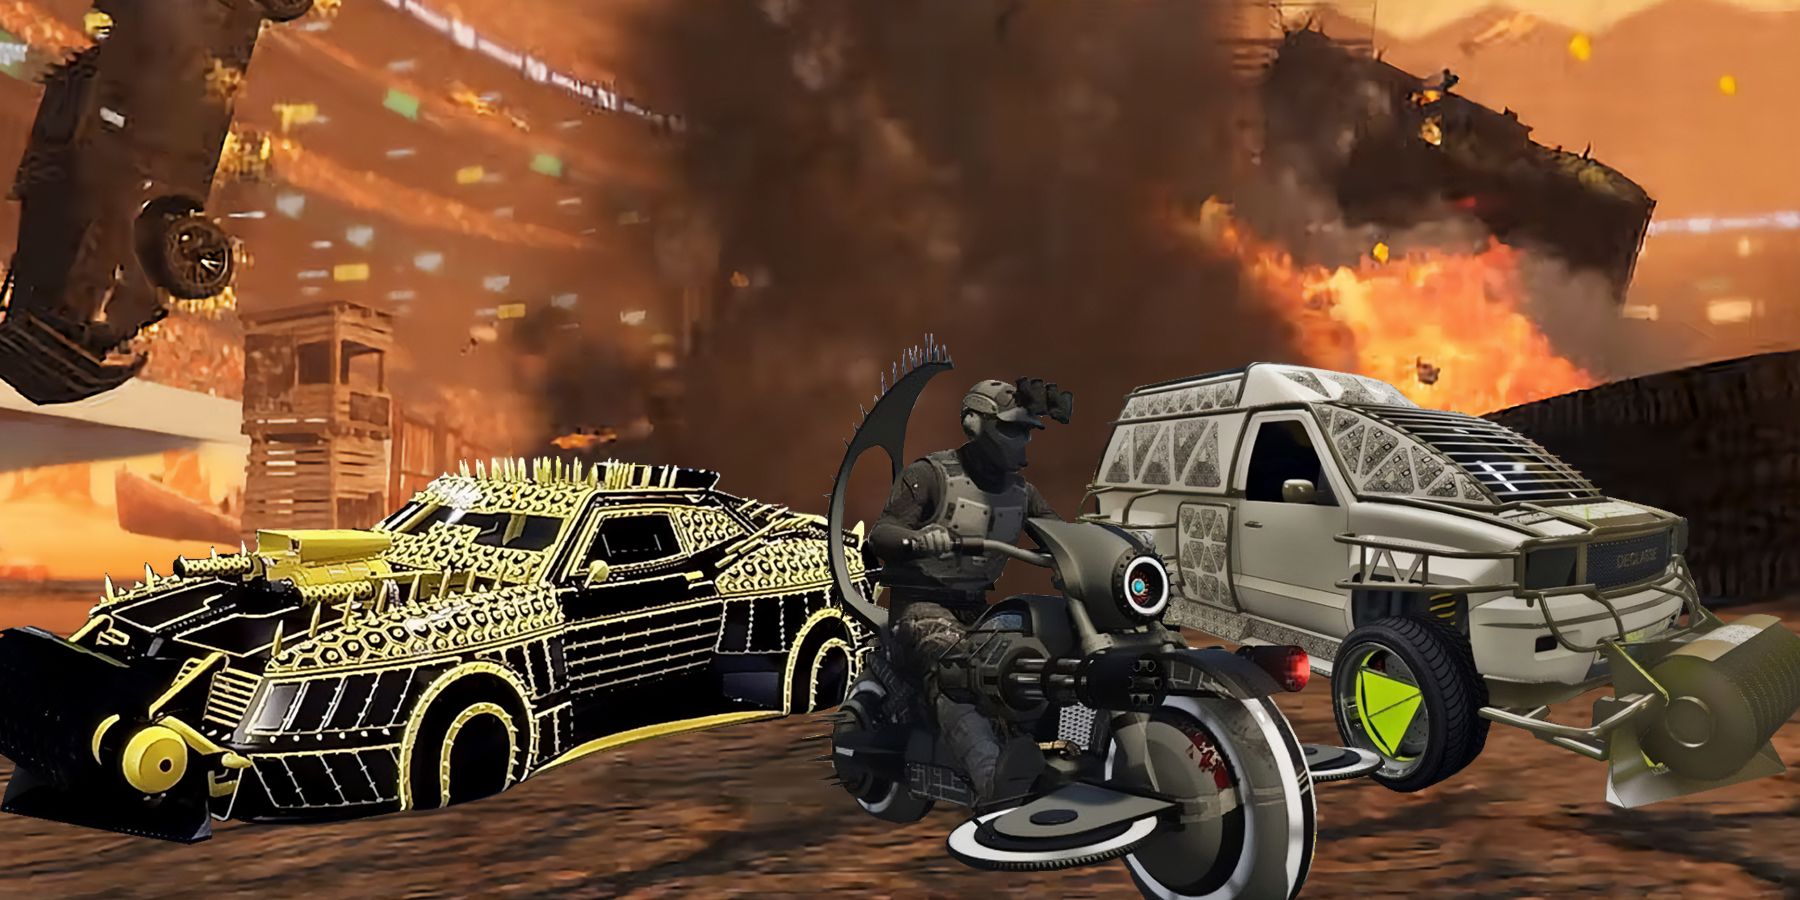 GTA Online Arena War update is live